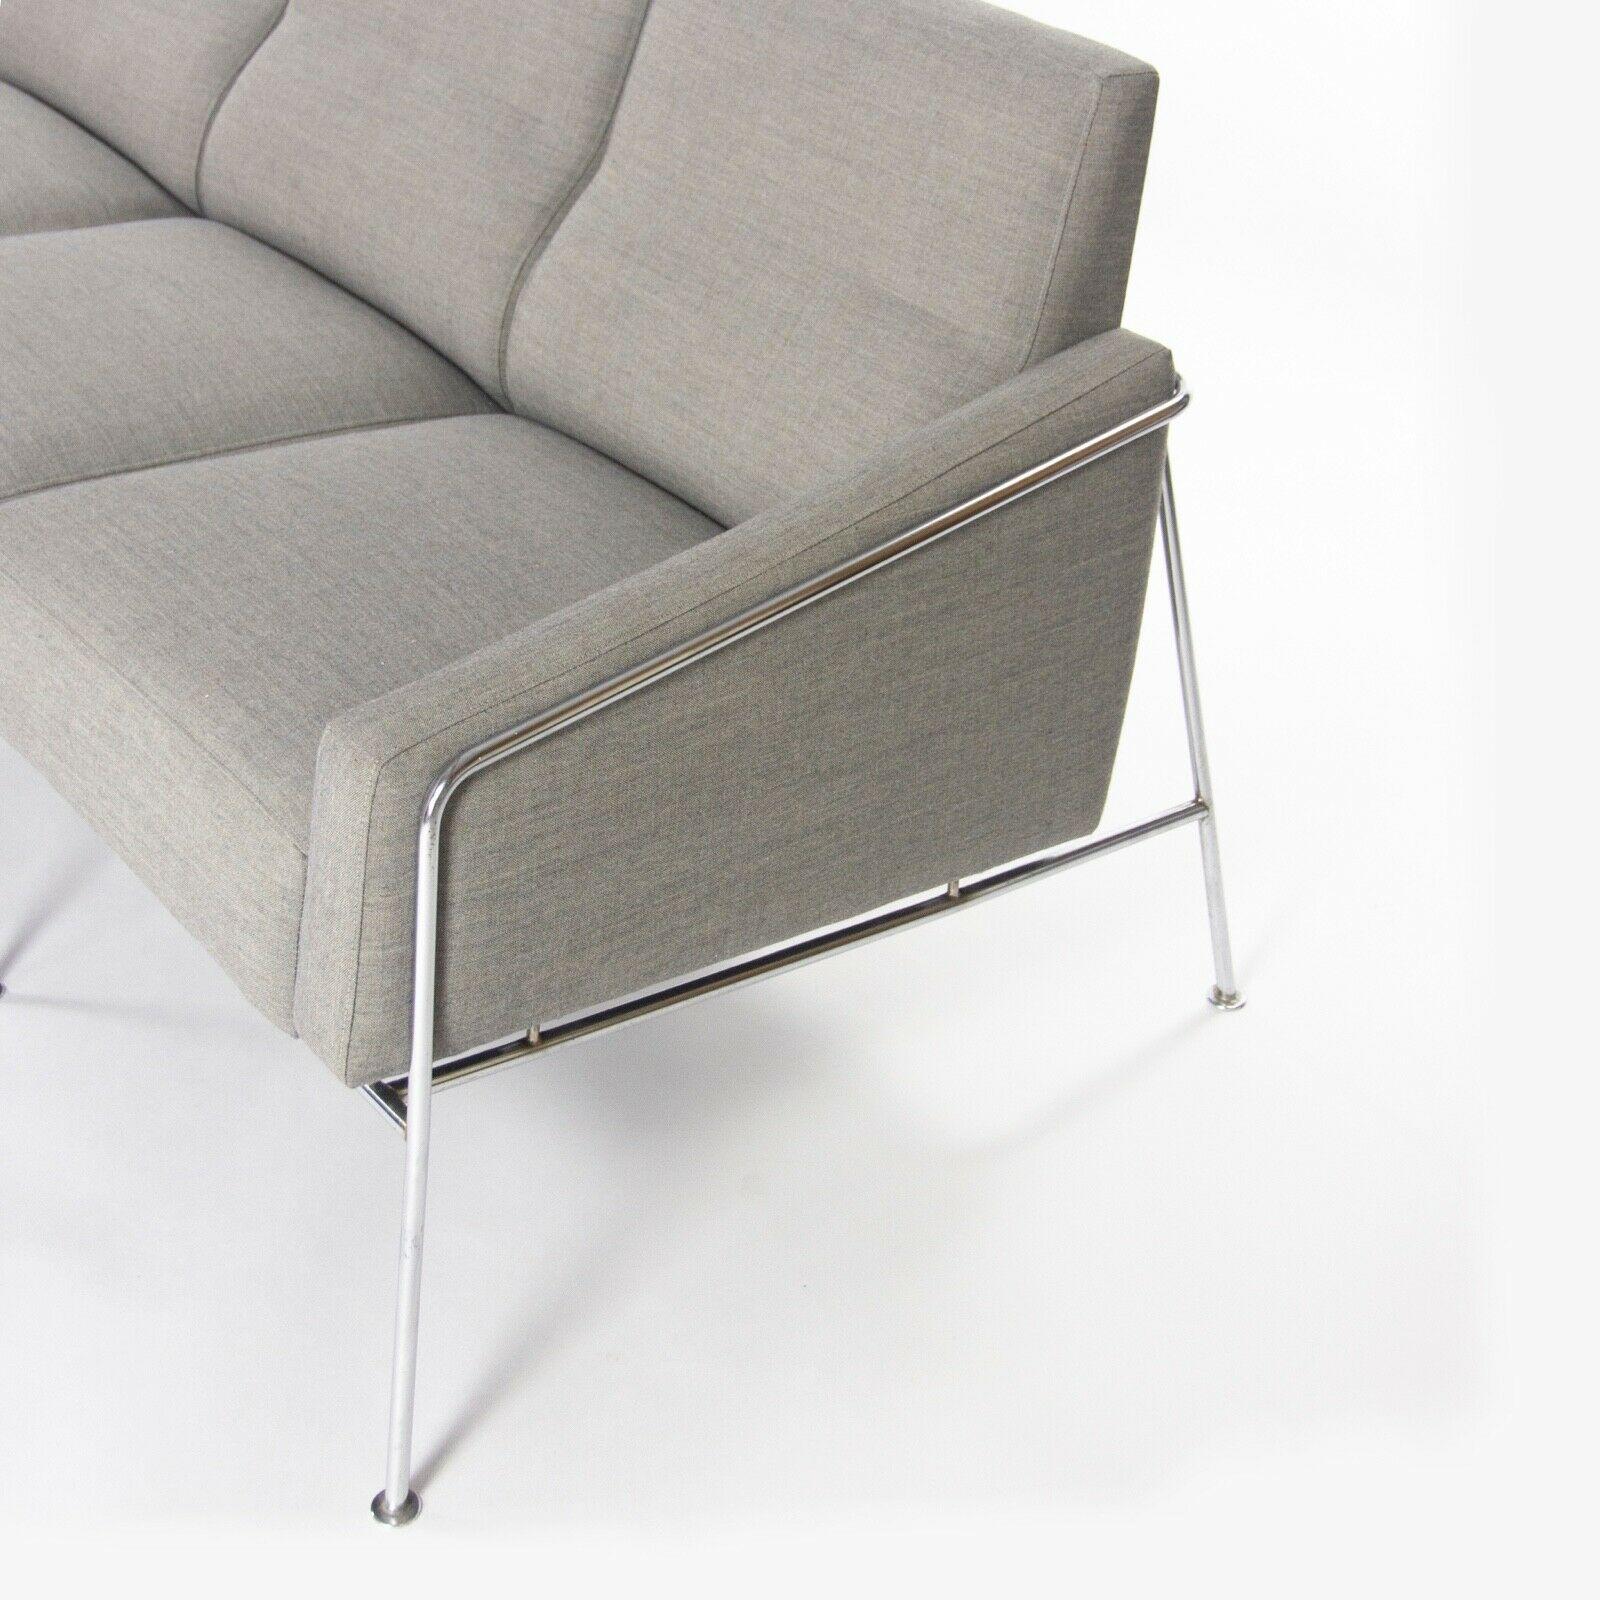 Nous proposons à la vente un canapé modèle 3300/4, conçu par Arne Jacobsen pour l'entreprise danoise Fritz Hansen. Cet exemplaire a été produit vers 1957. Alors qu'il est plus courant de voir des canapés à une place, des causeuses ou des canapés à